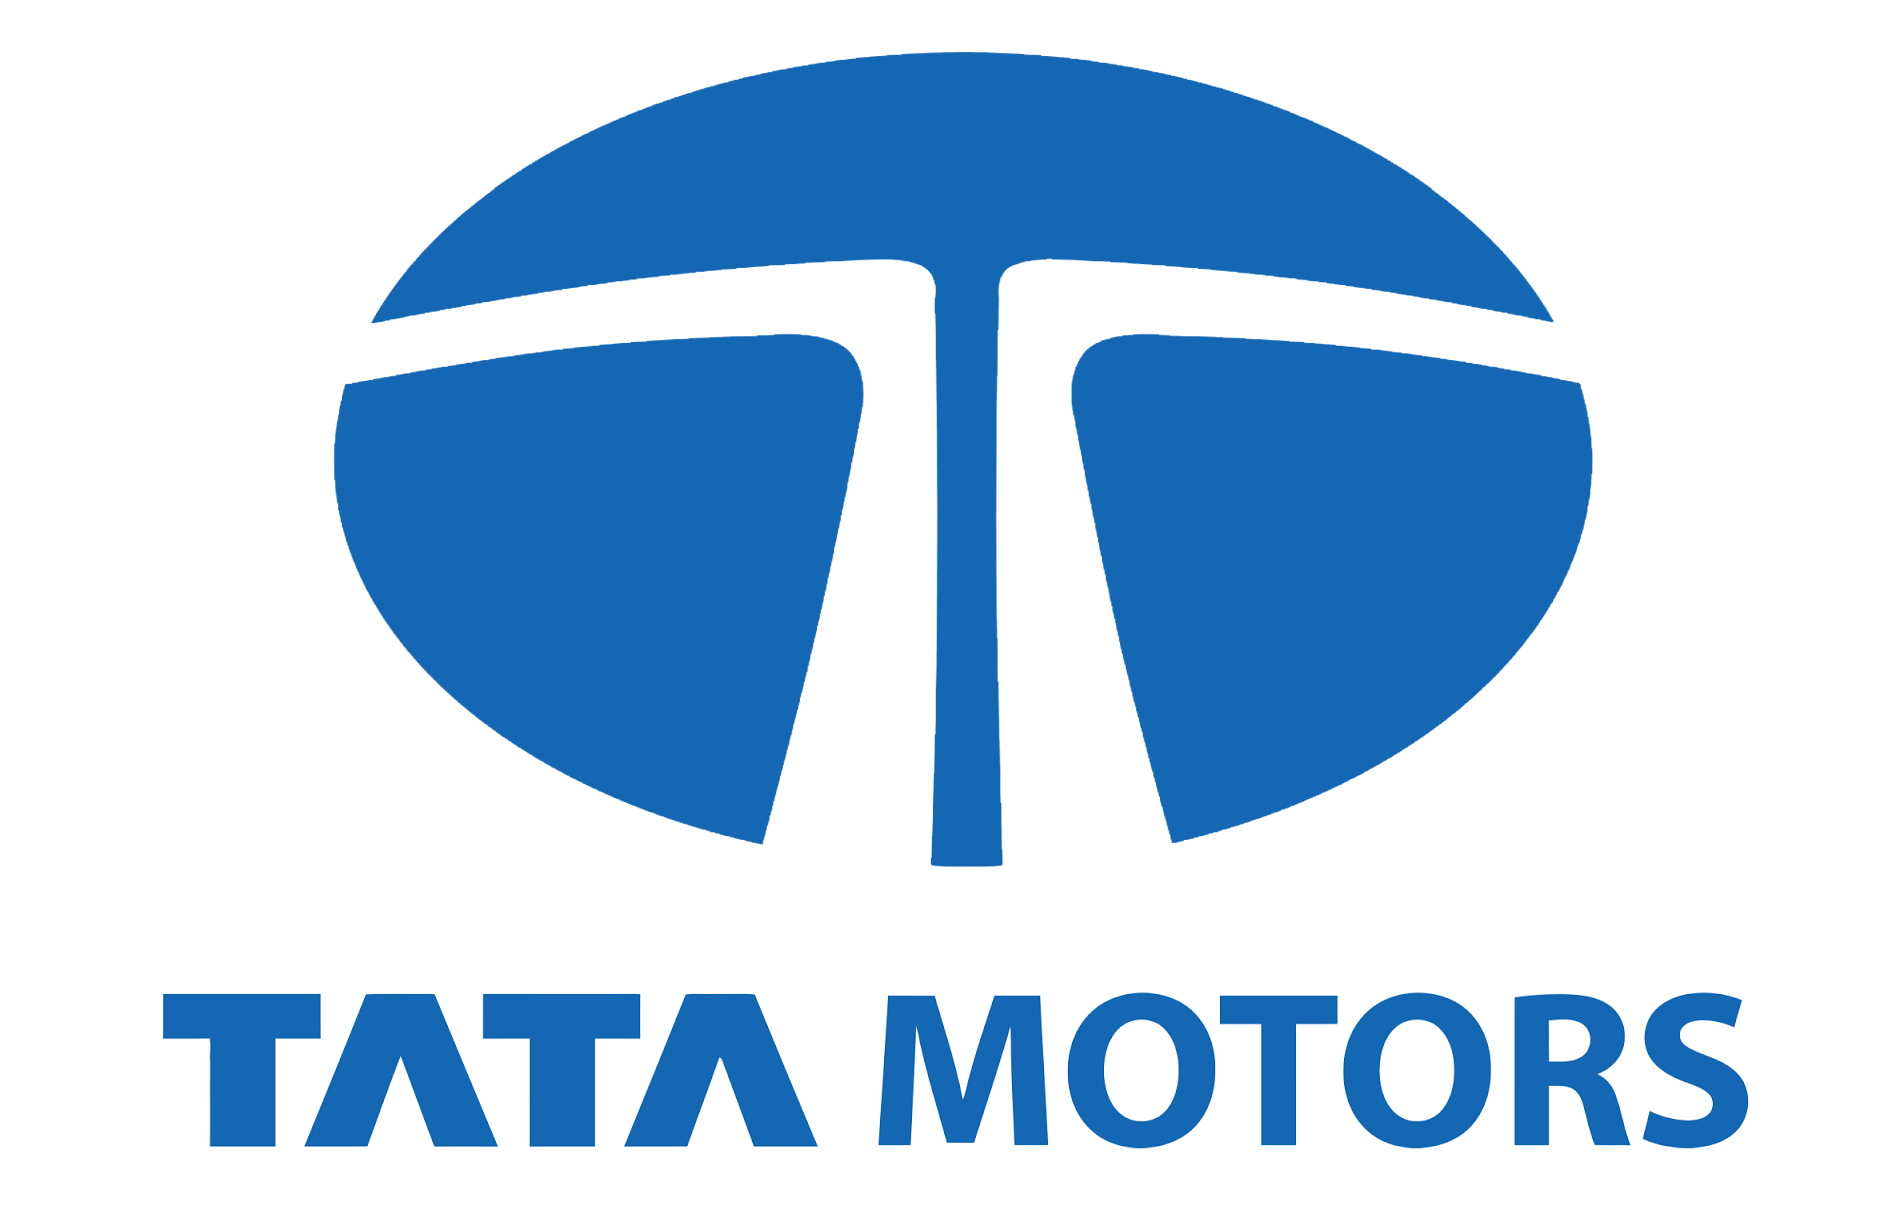 Tata Motors Cars Showroom - Prerana Motors|Show Room|Automotive